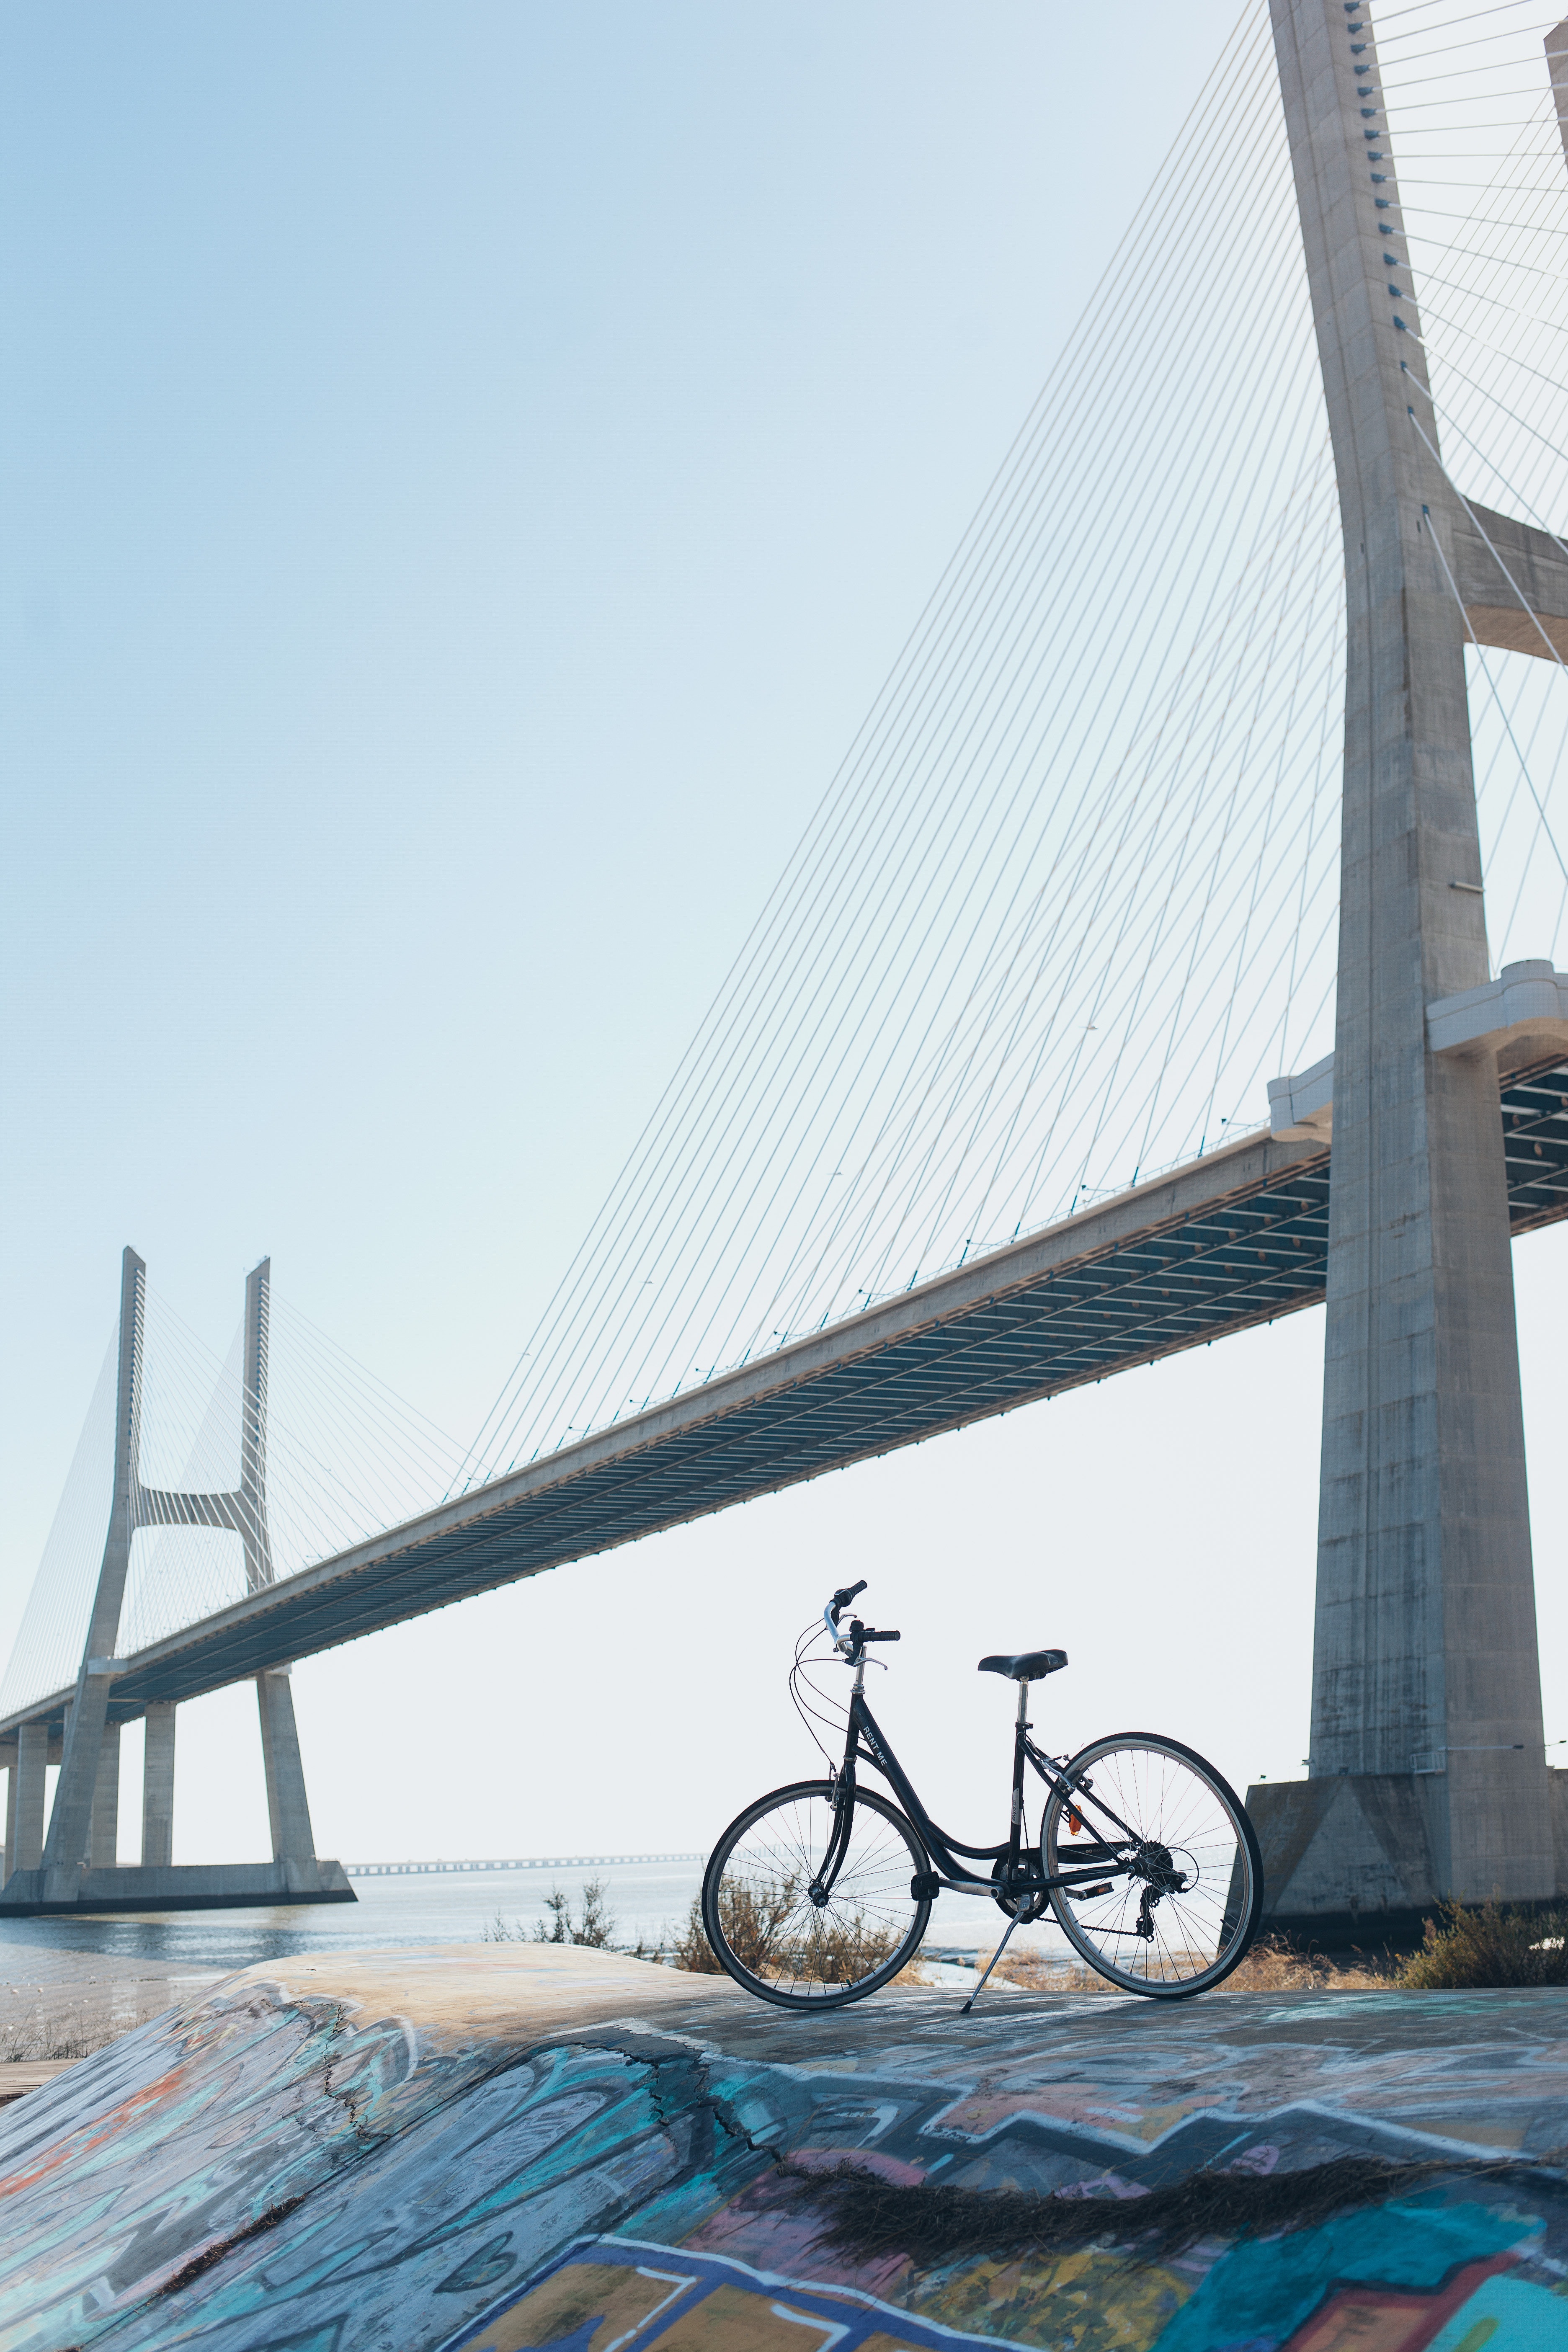 A bicycle parked under a gray concrete bridge